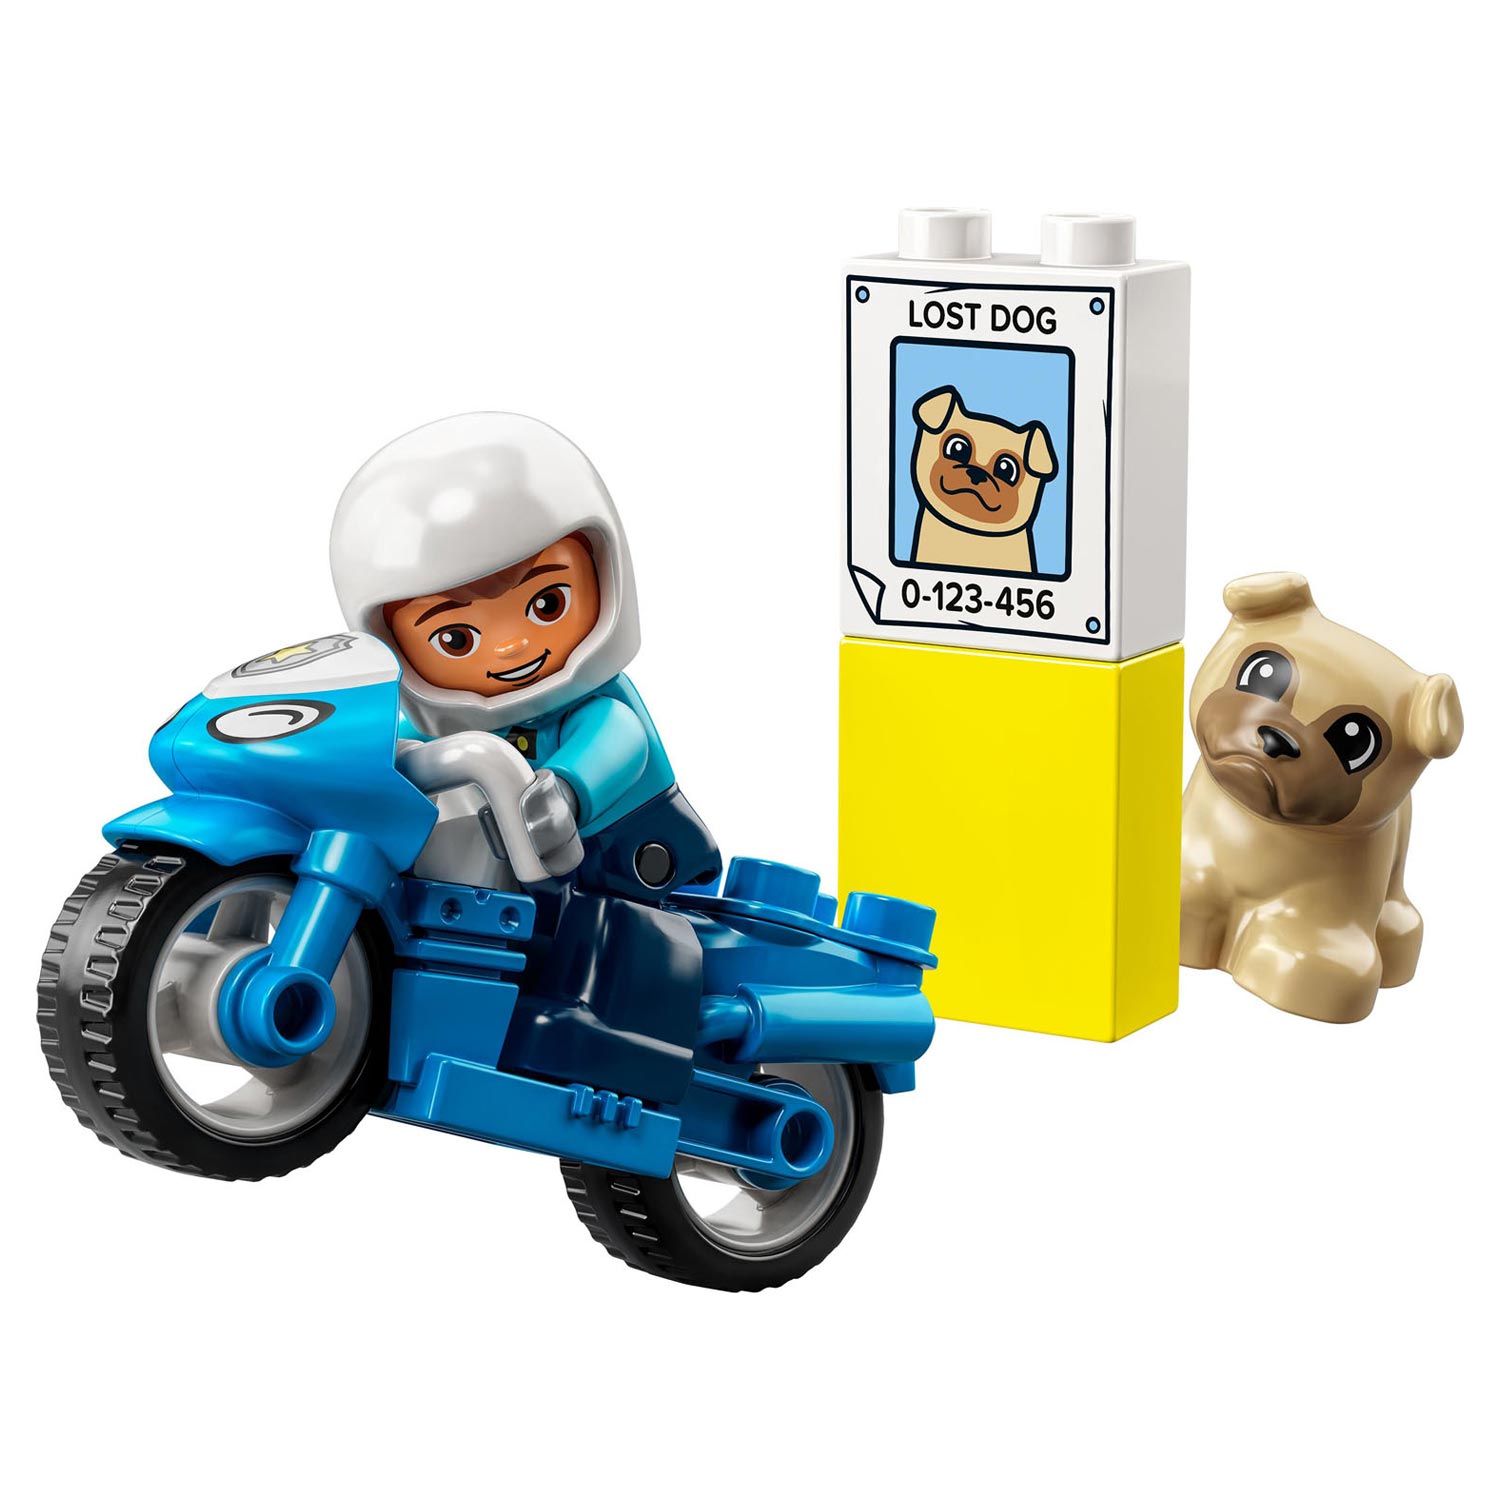 LEGO Duplo 10967 La moto de police